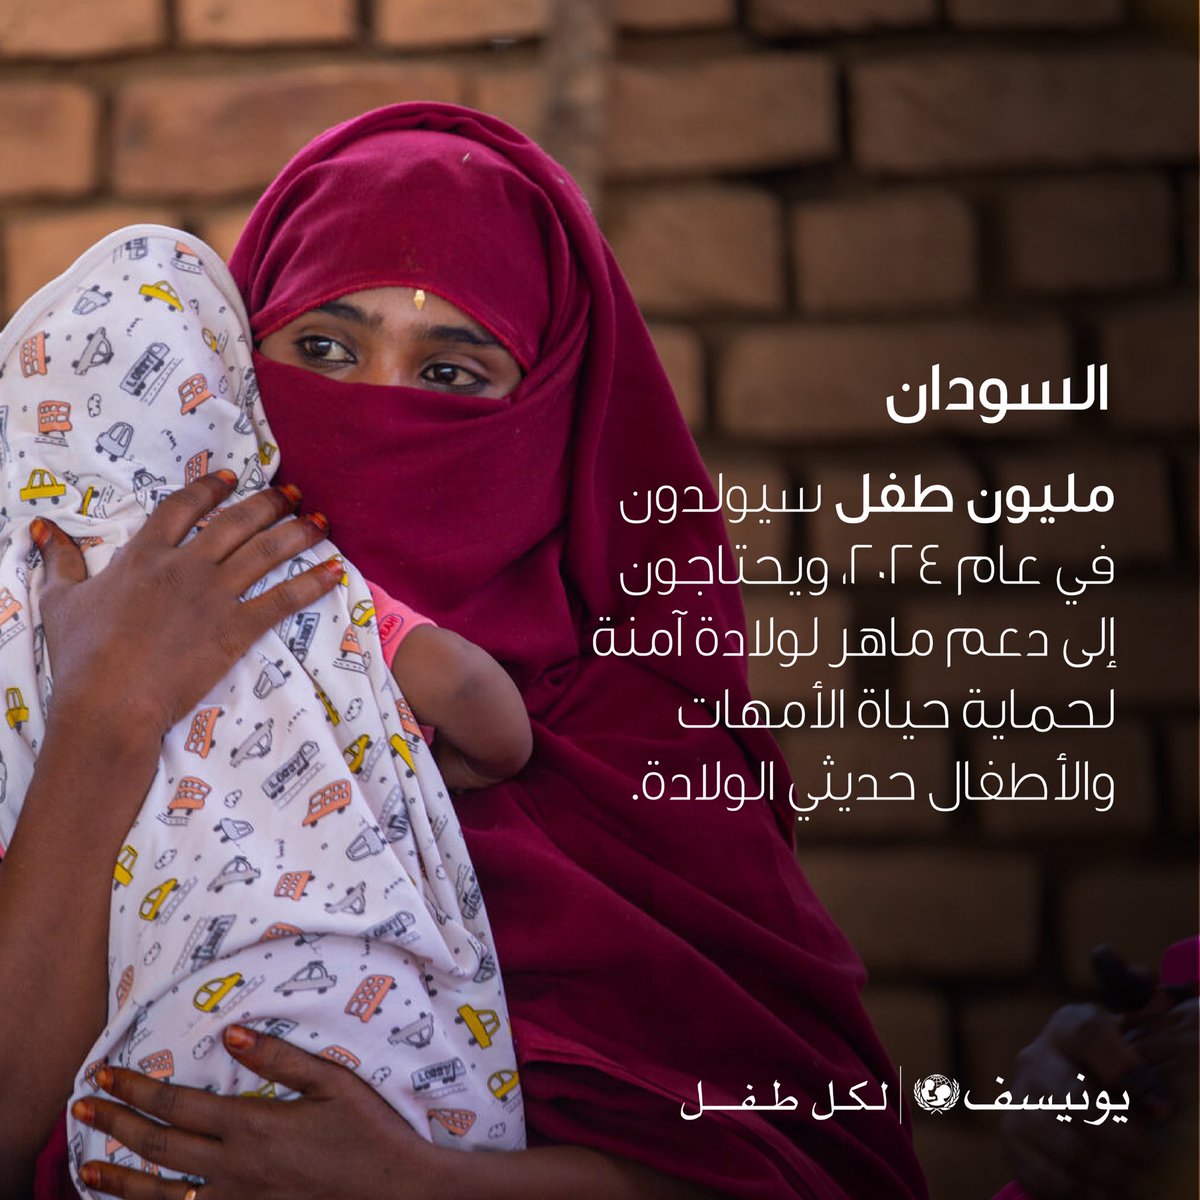 أكثر من 70% من المستشفيات في المناطق المتضررة من النزاع خارج الخدمة.

يحق لجميع #الأطفال الحصول على خدمات الرعاية الصحية، بغض النظر عن مكان وجودهم.​

#لكل_طفل​
#مع_السودان